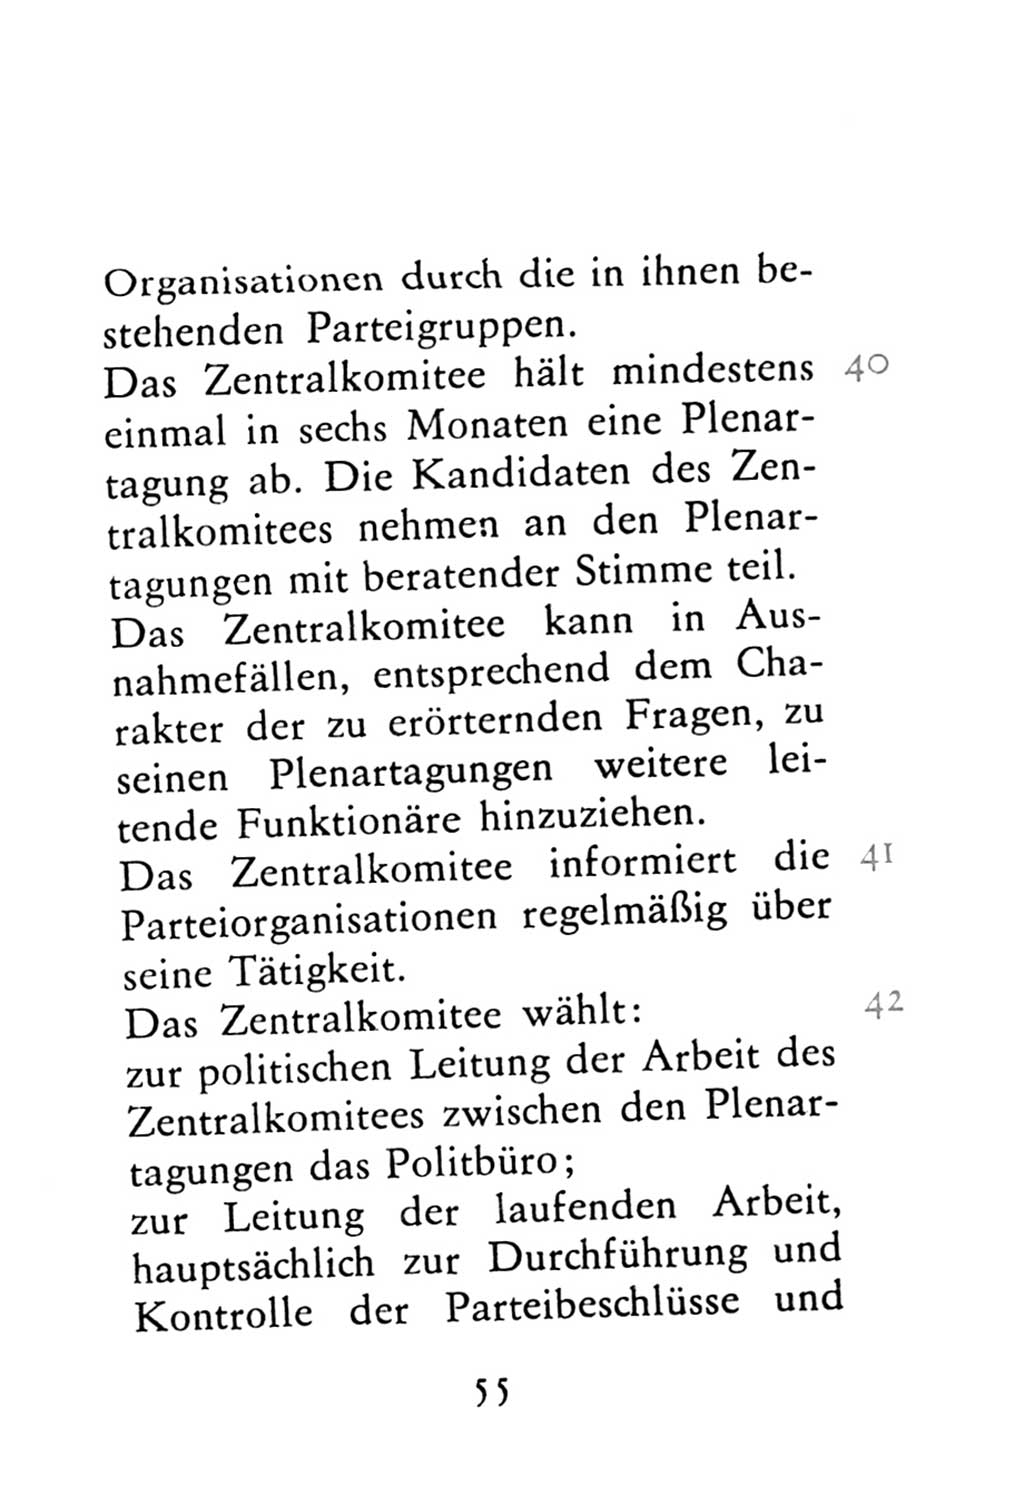 Statut der Sozialistischen Einheitspartei Deutschlands (SED) 1976, Seite 55 (St. SED DDR 1976, S. 55)